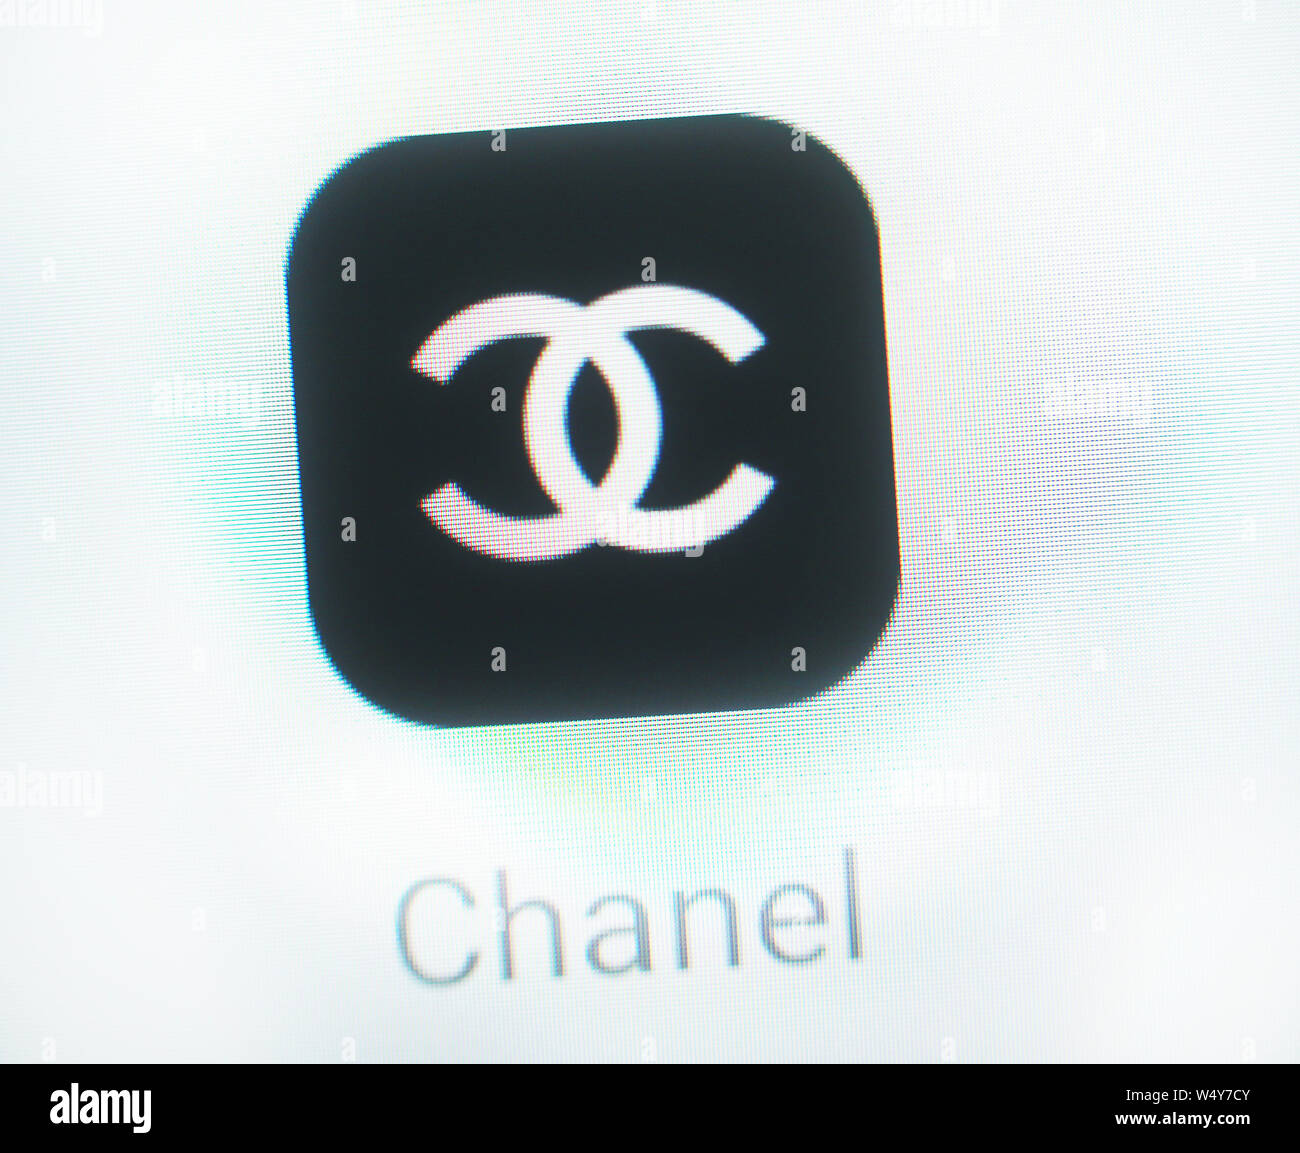 Chanel Zeichen Stockfotos Und Bilder Kaufen Alamy